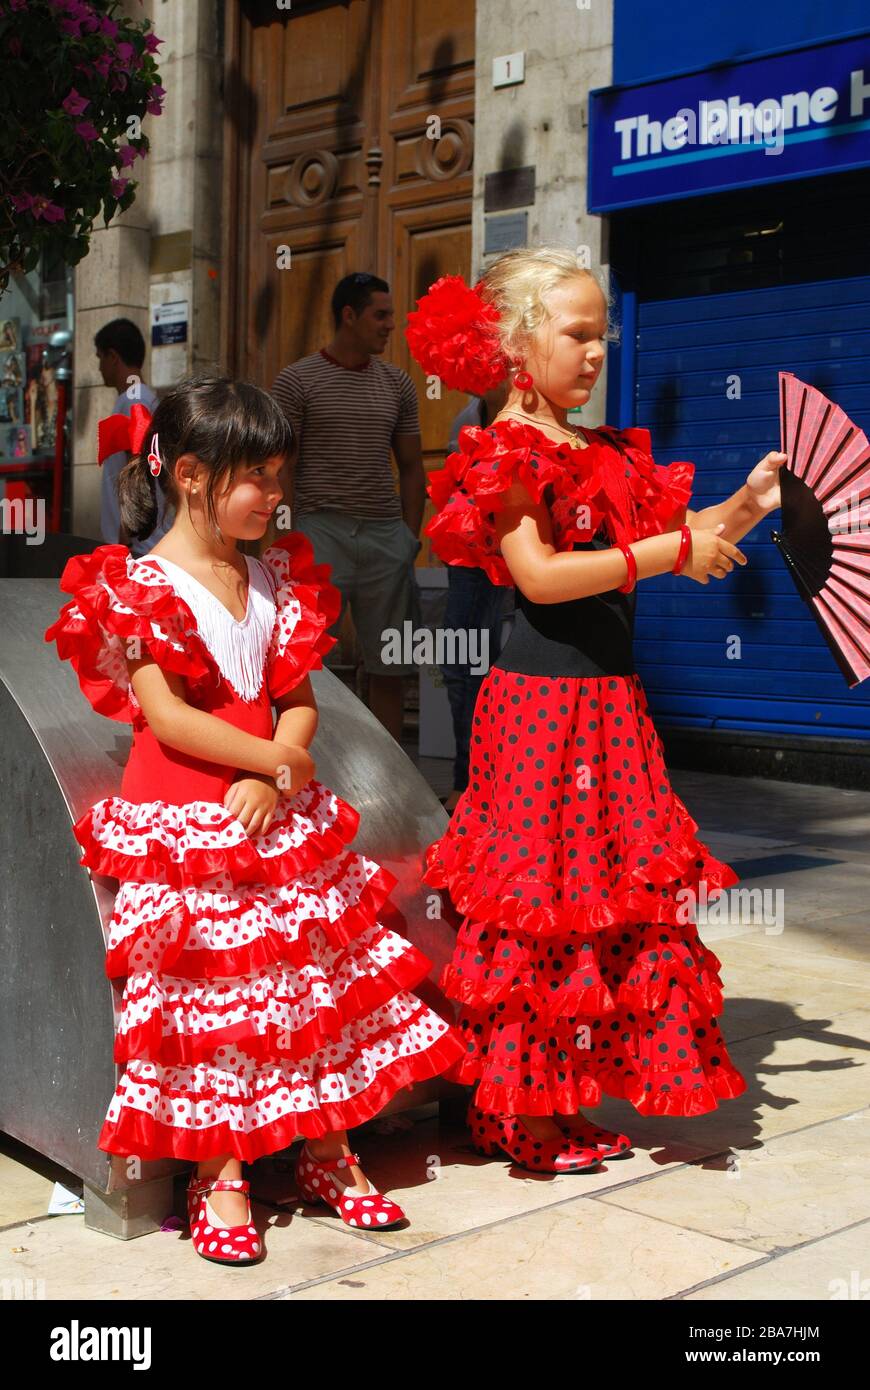 Cómo vestir para ir la Feria de Málaga: Diez trajes de flamenca para diez  días de fiesta